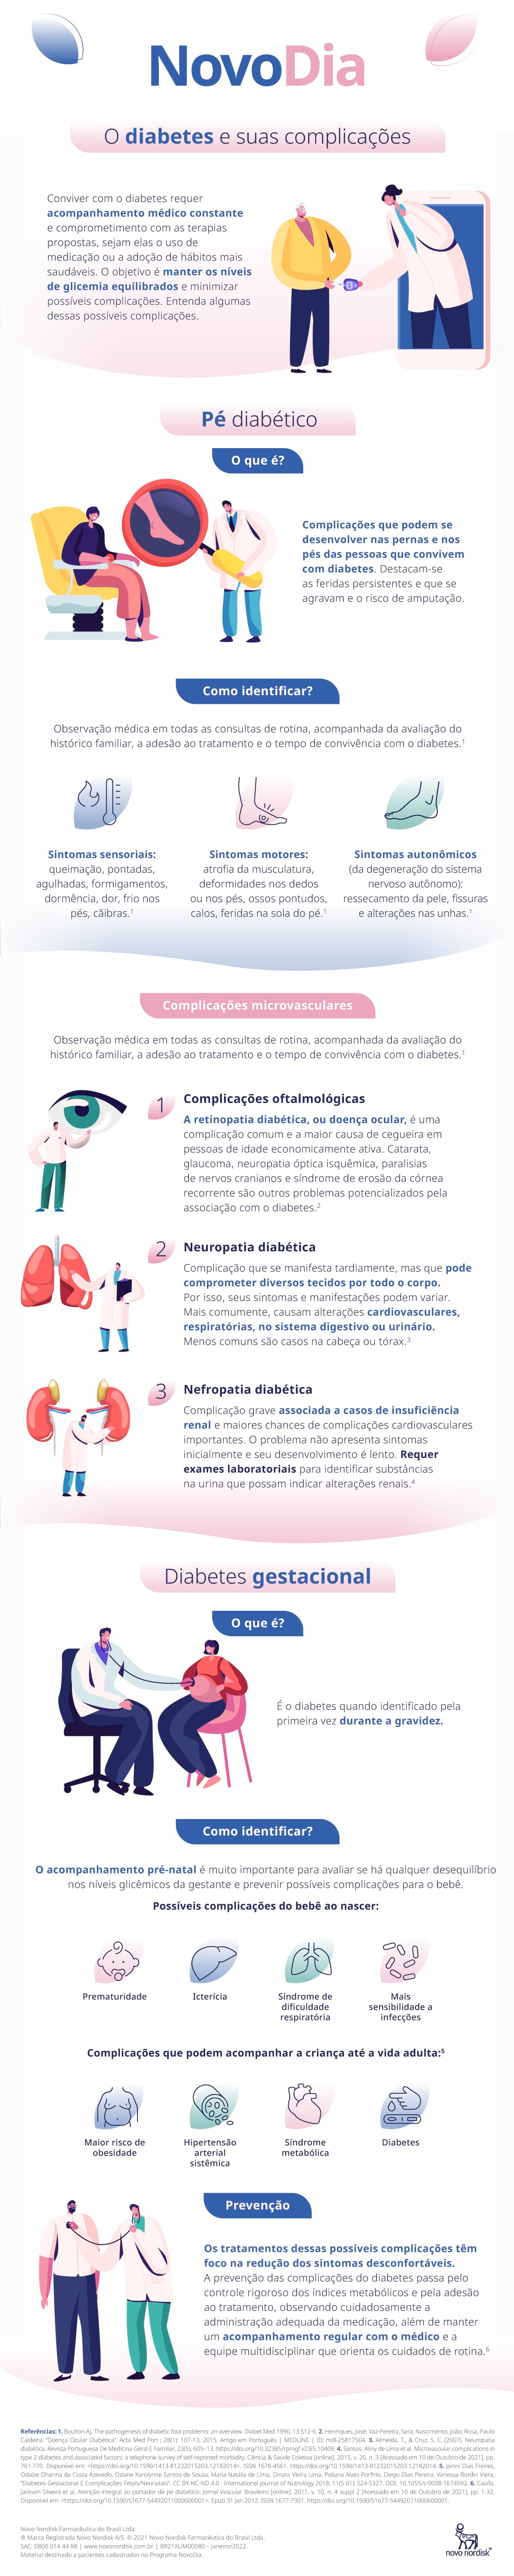 Infográfico sobre o Diabetes e suas complicações: Pé Diabético, microvasculares, diabetes gestacional e dicas de prevenção